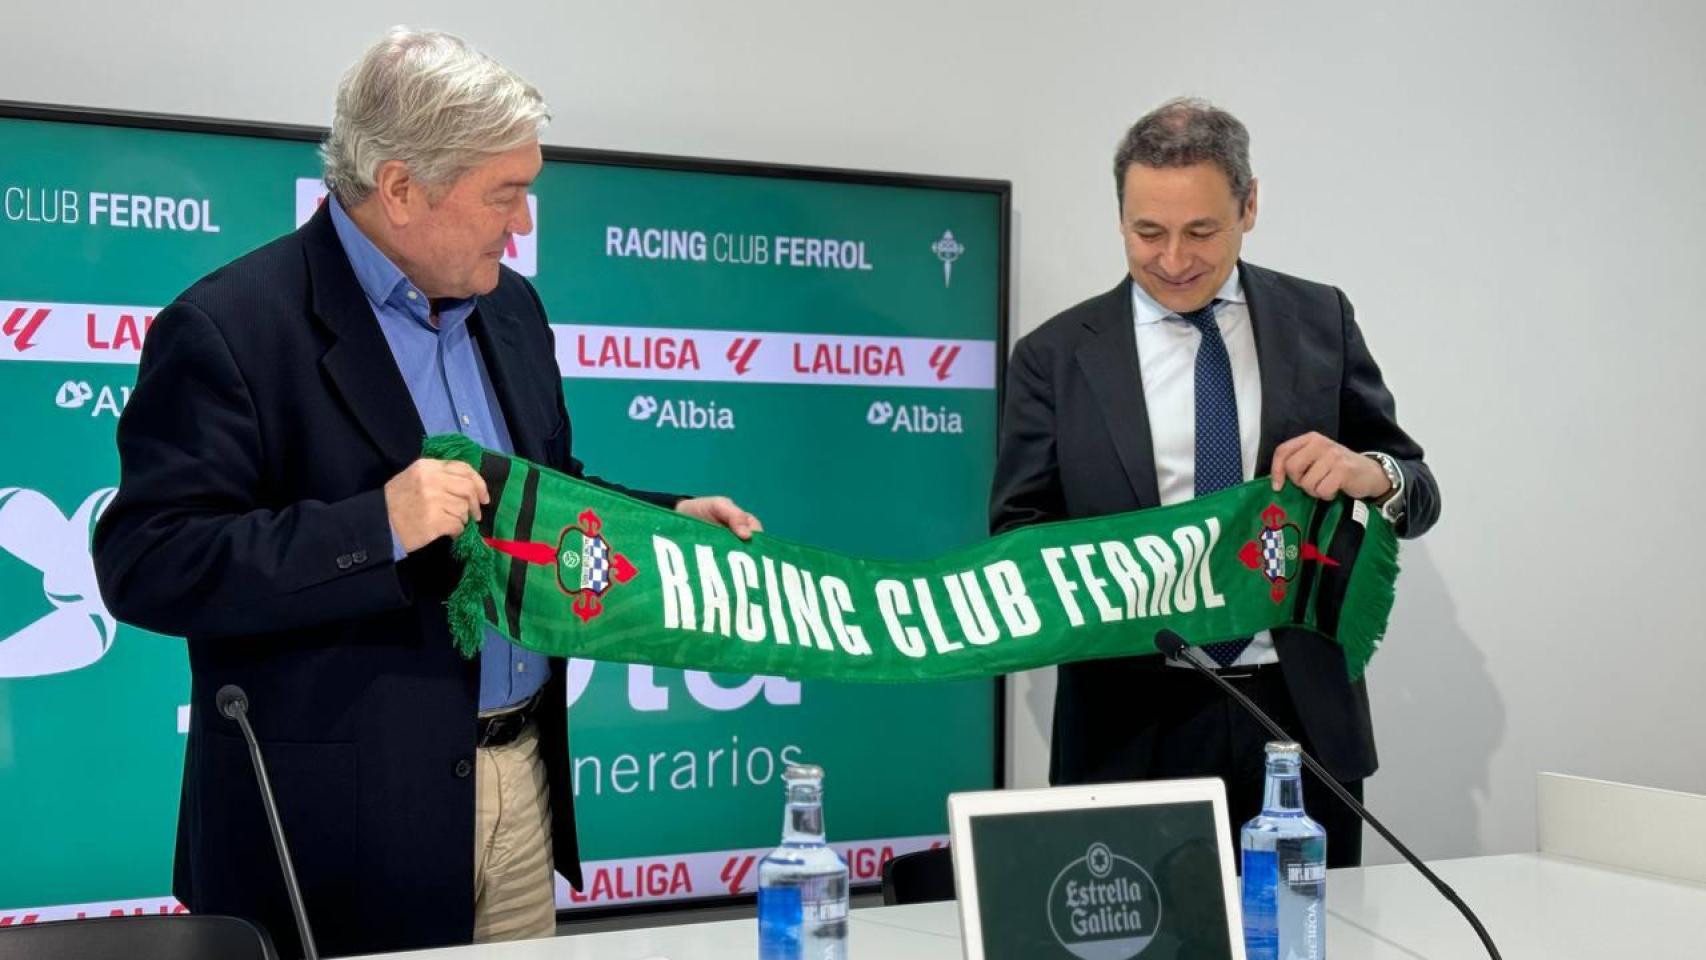 Grupo Albia, patrocinador oficial del Racing Club Ferrol durante esta temporada